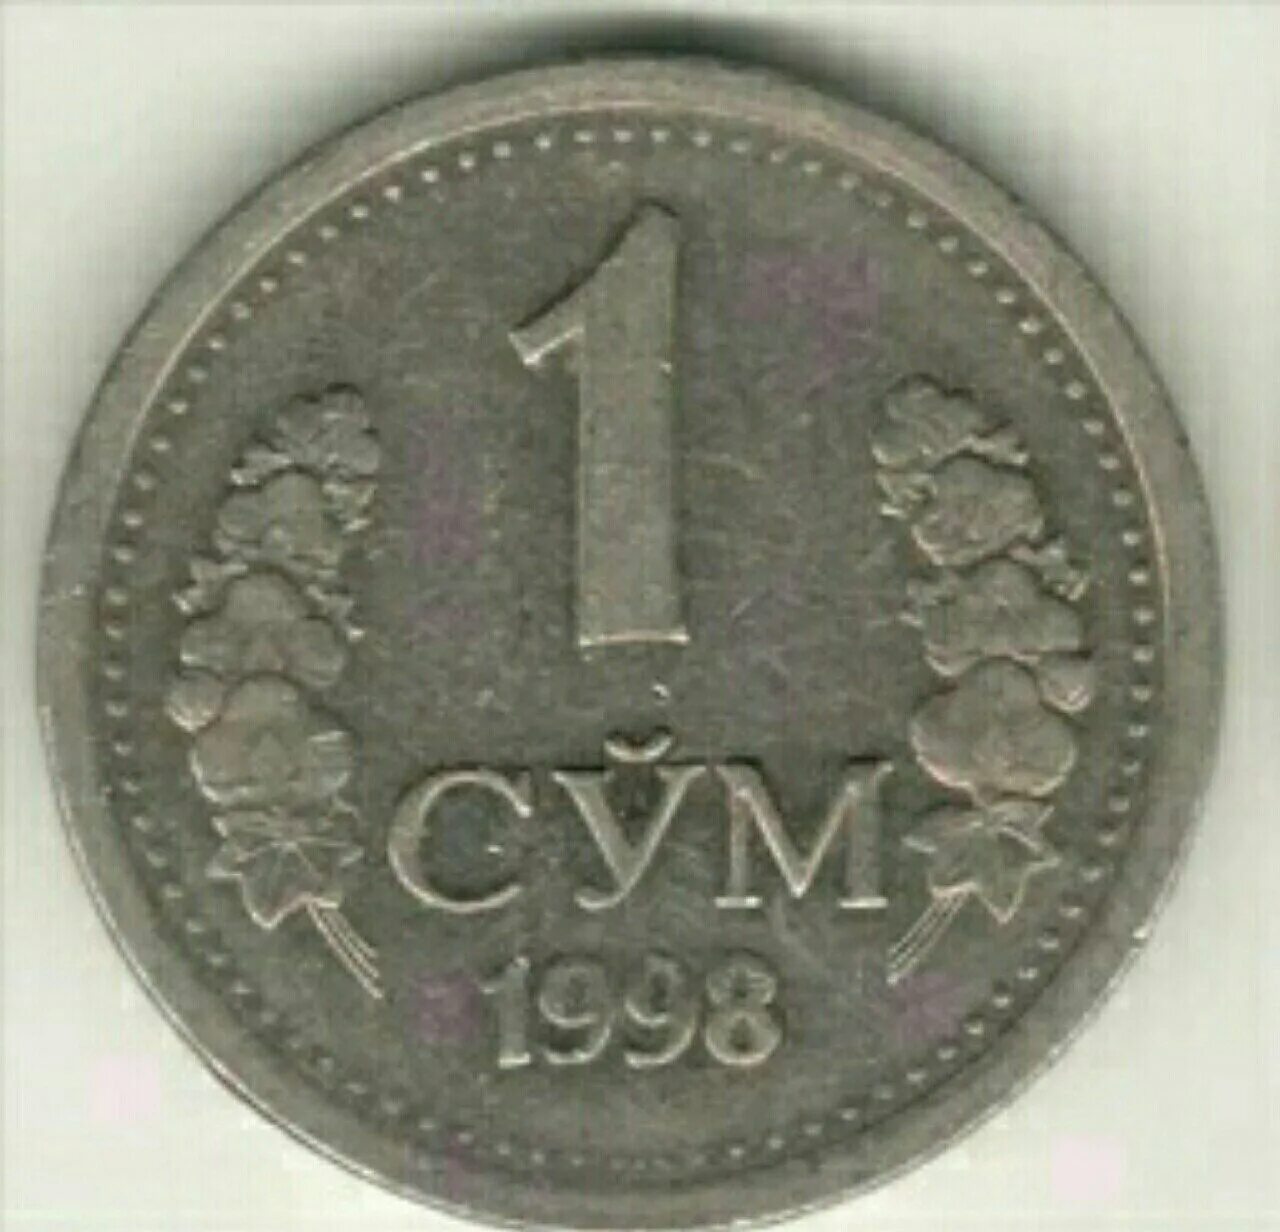 Сум ч. Монета 1 сум Узбекистан 1998 год. Сум (денежная единица). 1 Узбекский сум. Узбекские монеты.